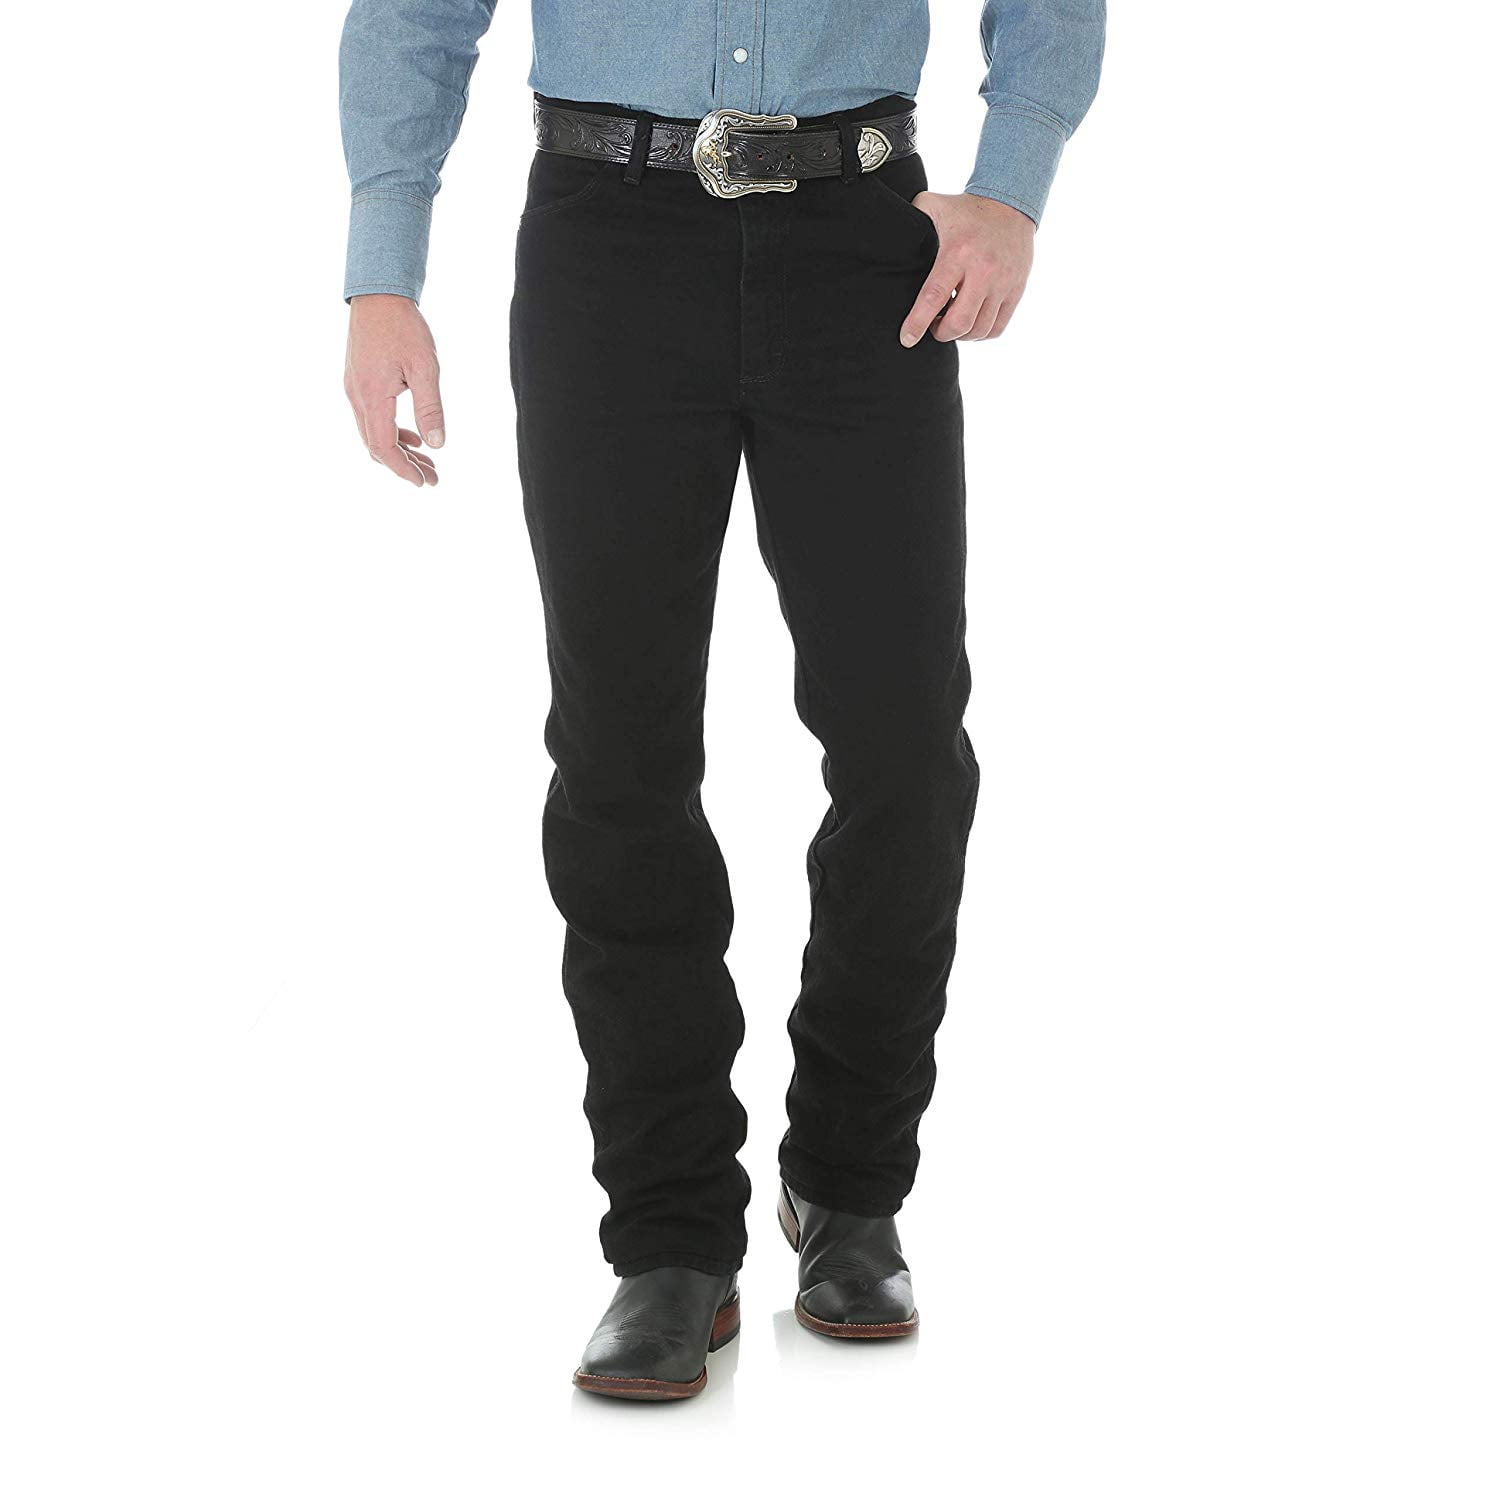 BNWT Wrangler BOYTON Men's Branded Regular Tapered Straight Leg Stoned Jeans 